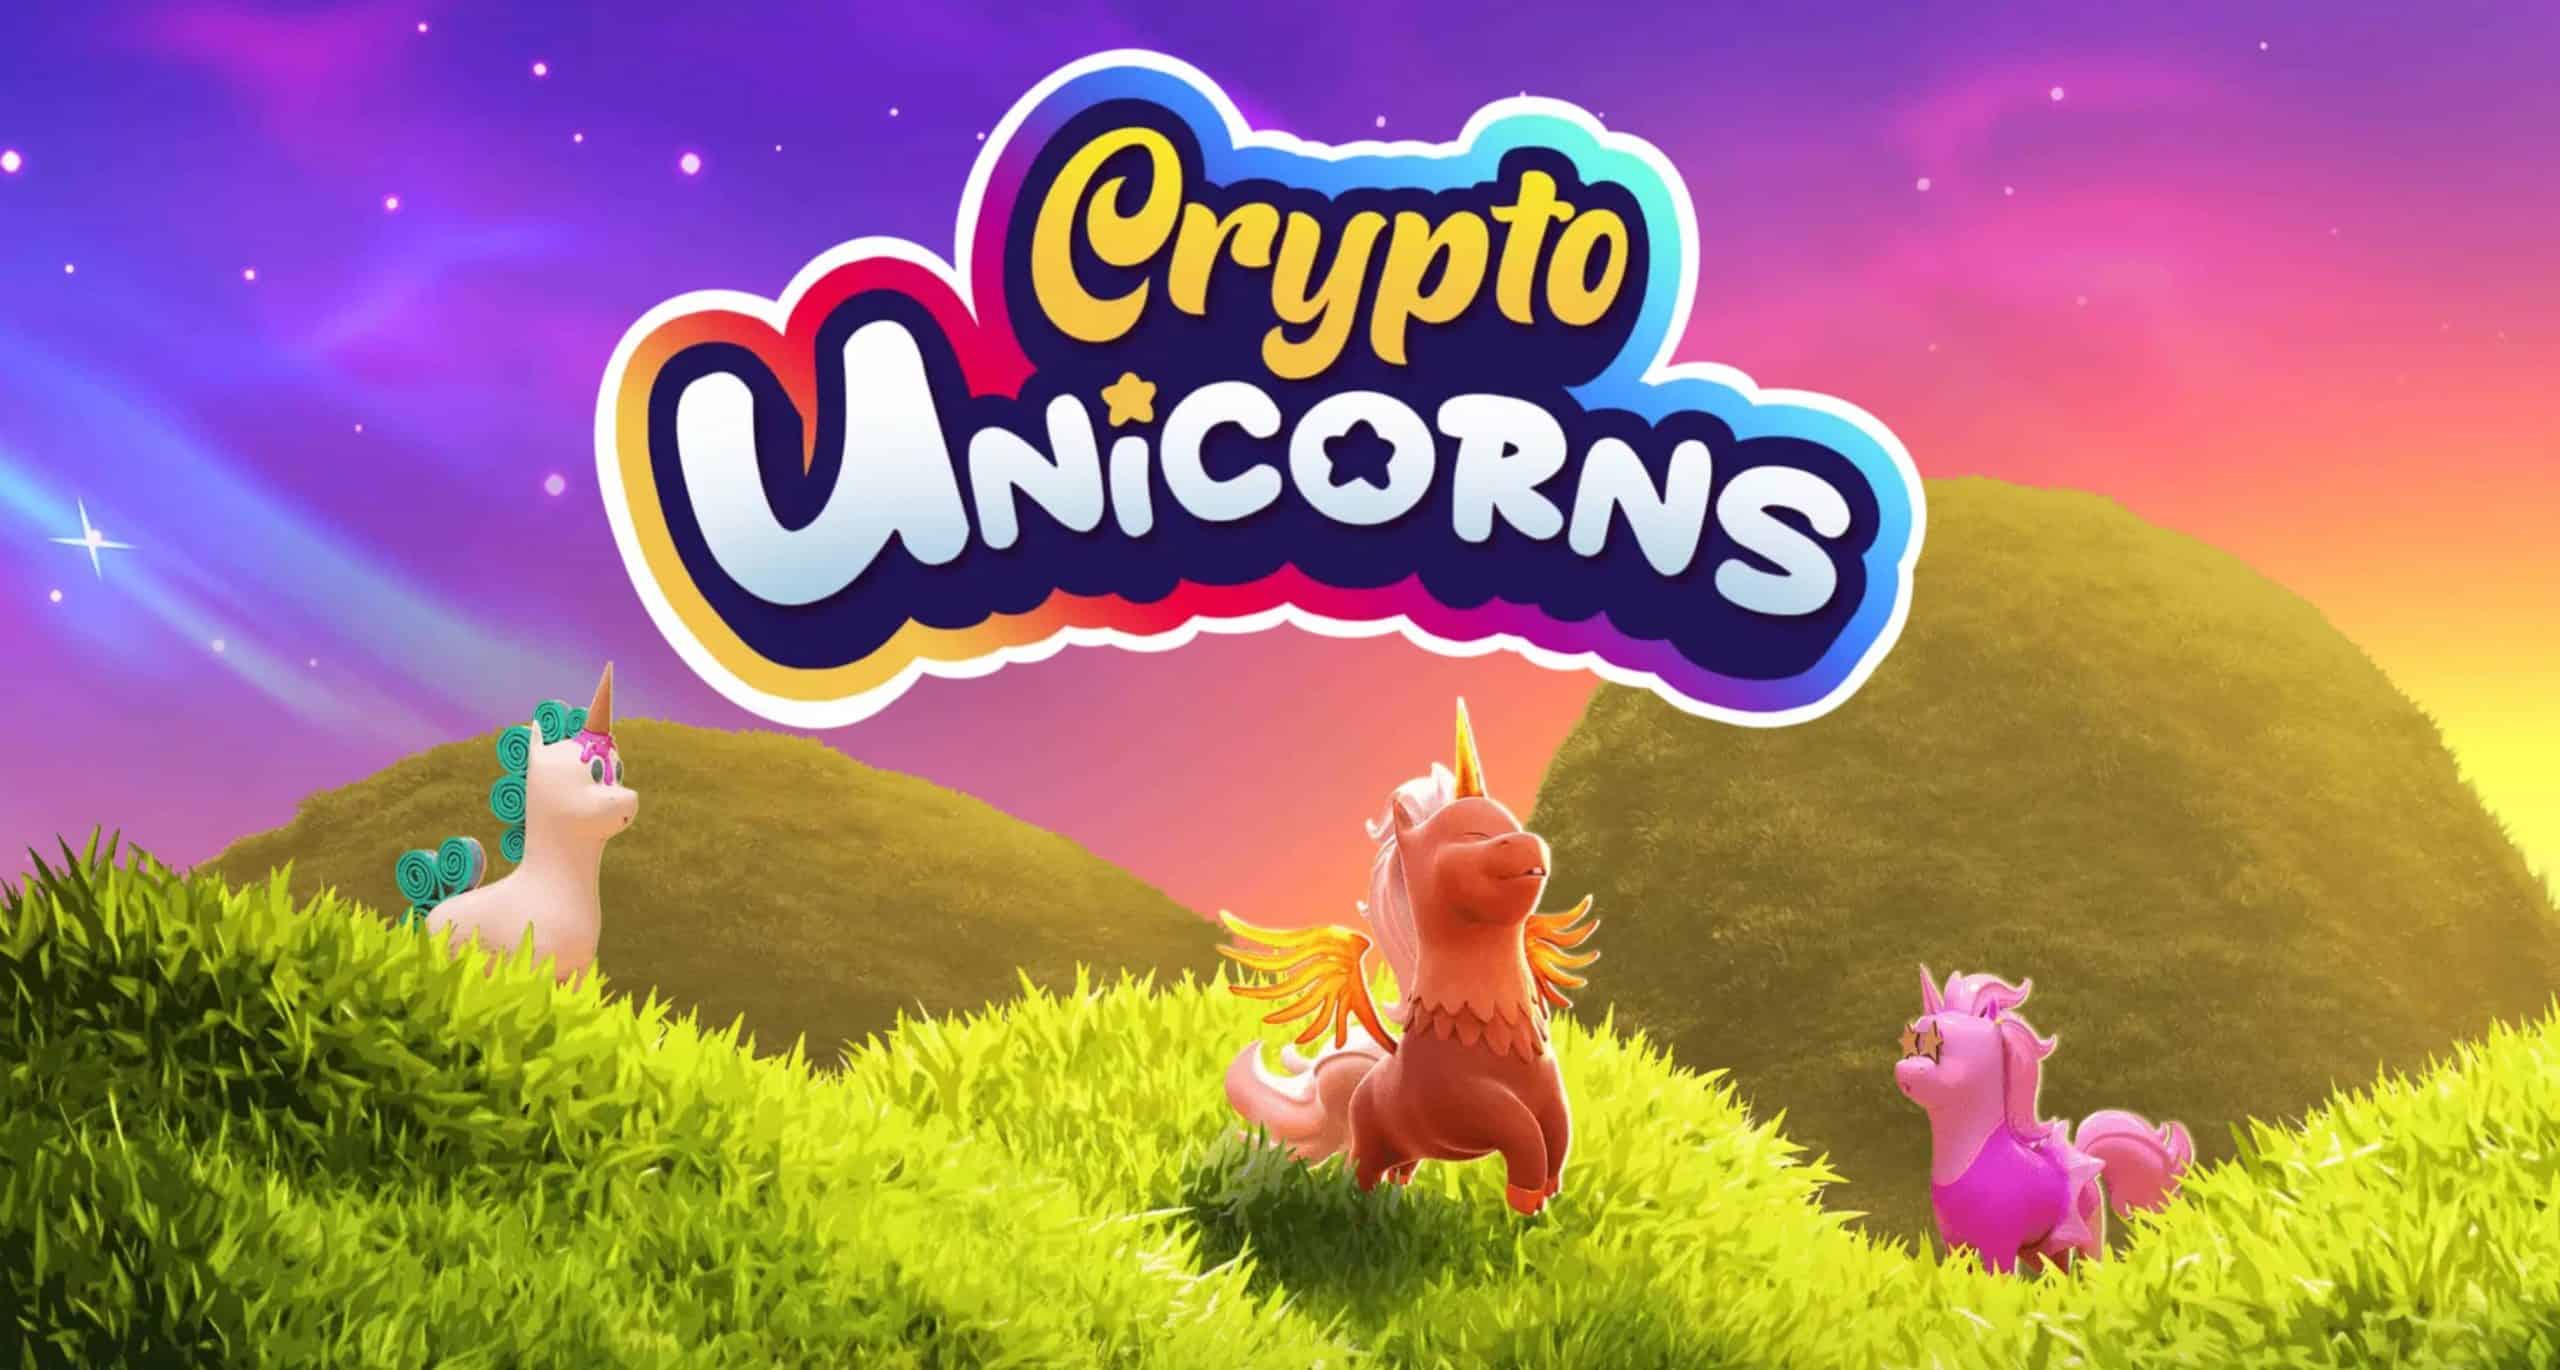 Crypto Unicorns